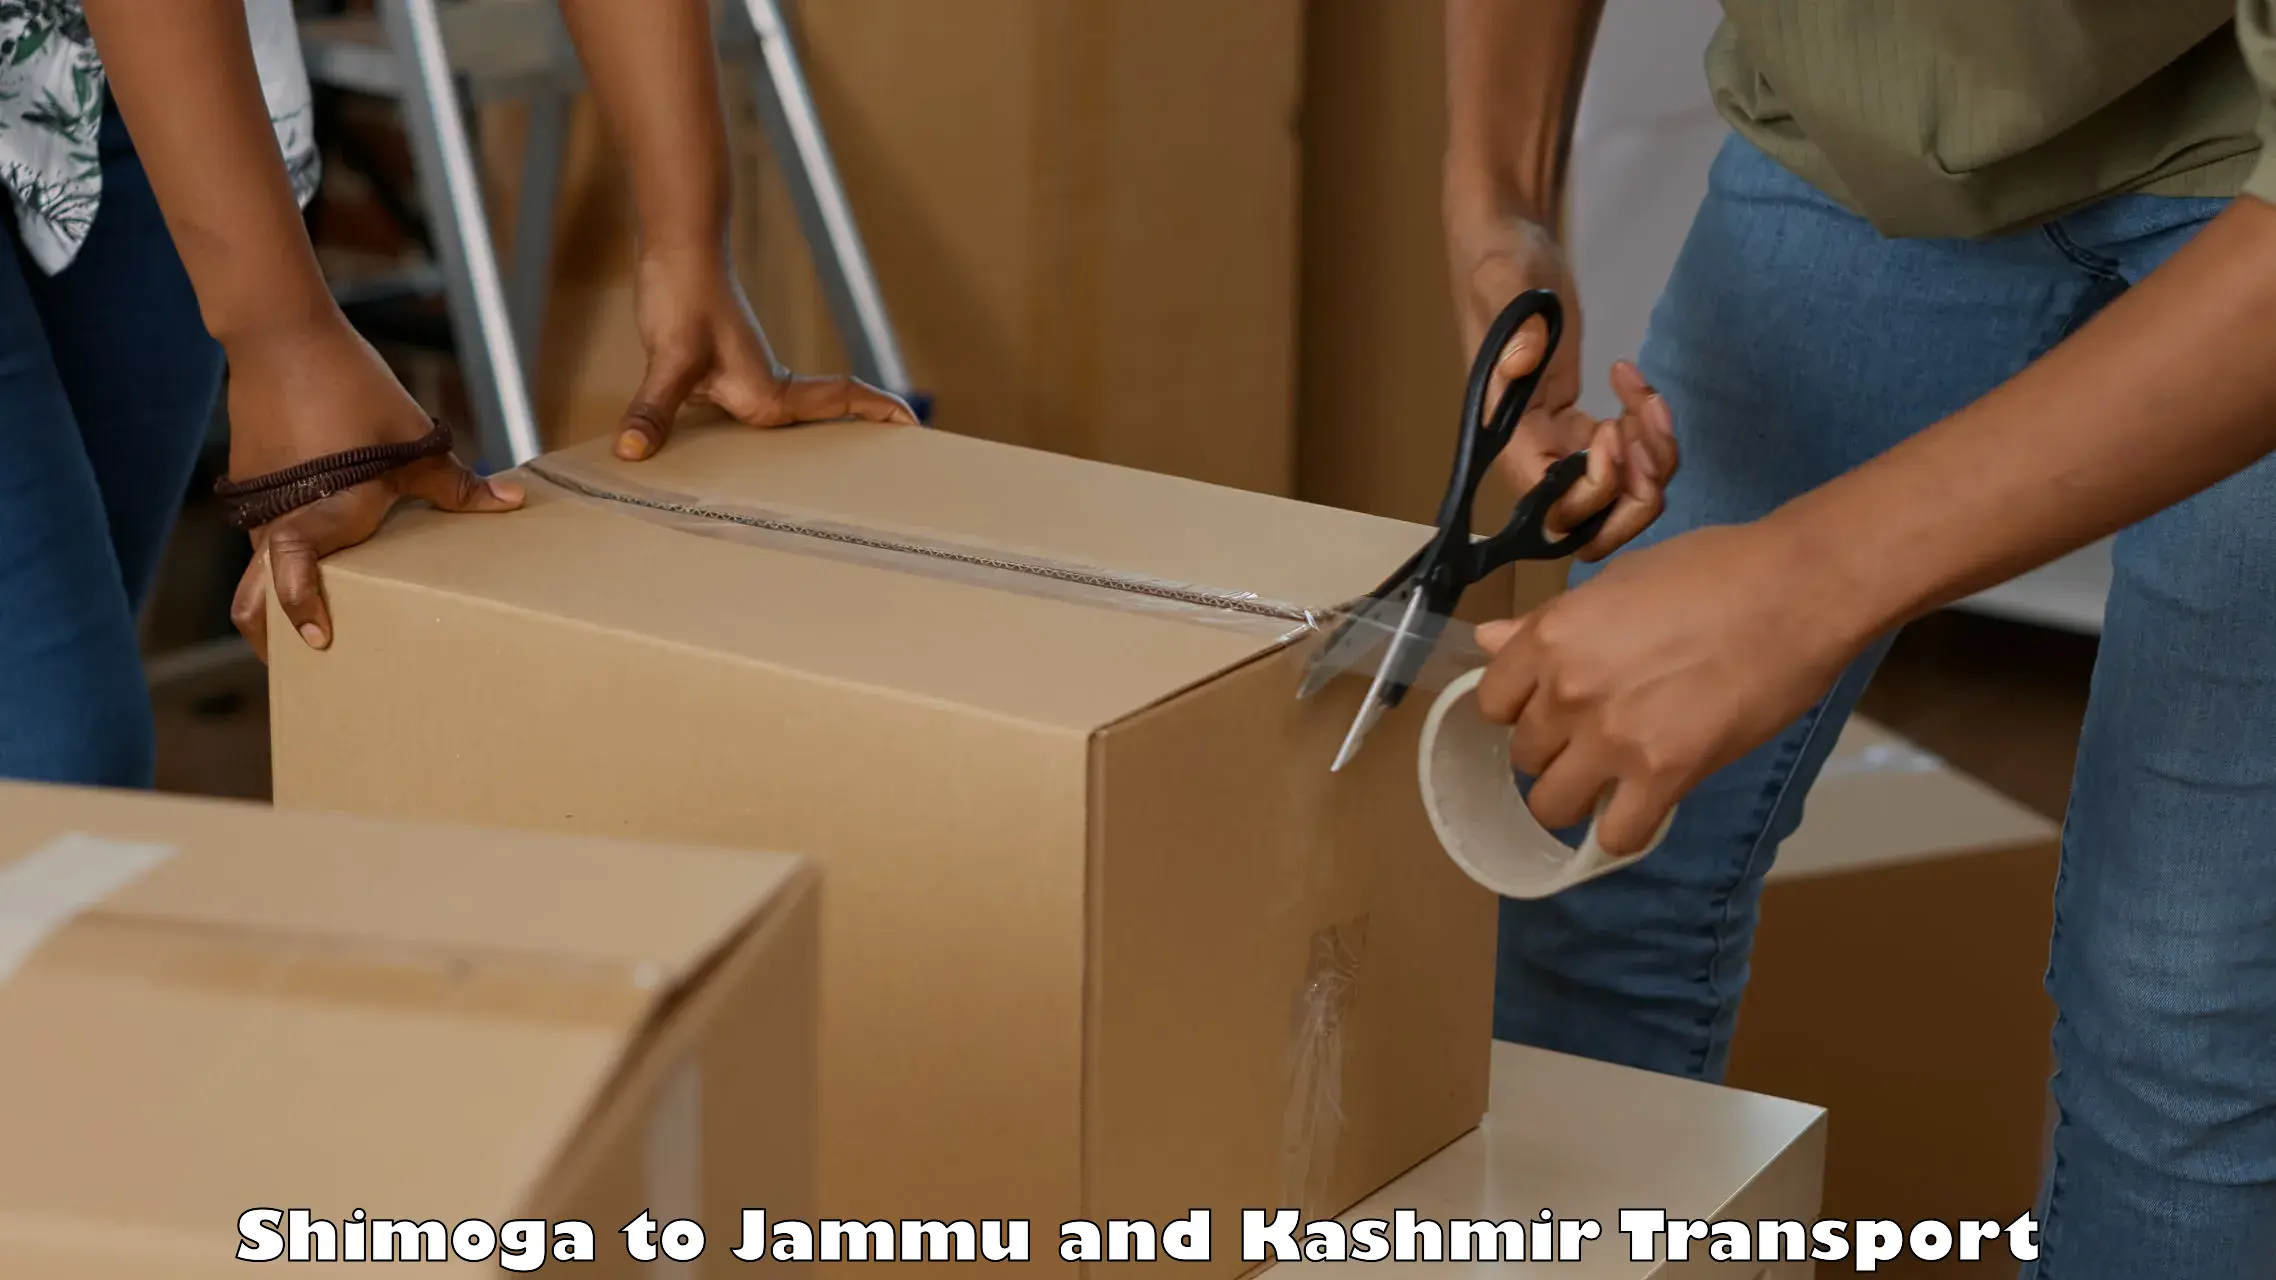 Parcel transport services Shimoga to Jammu and Kashmir